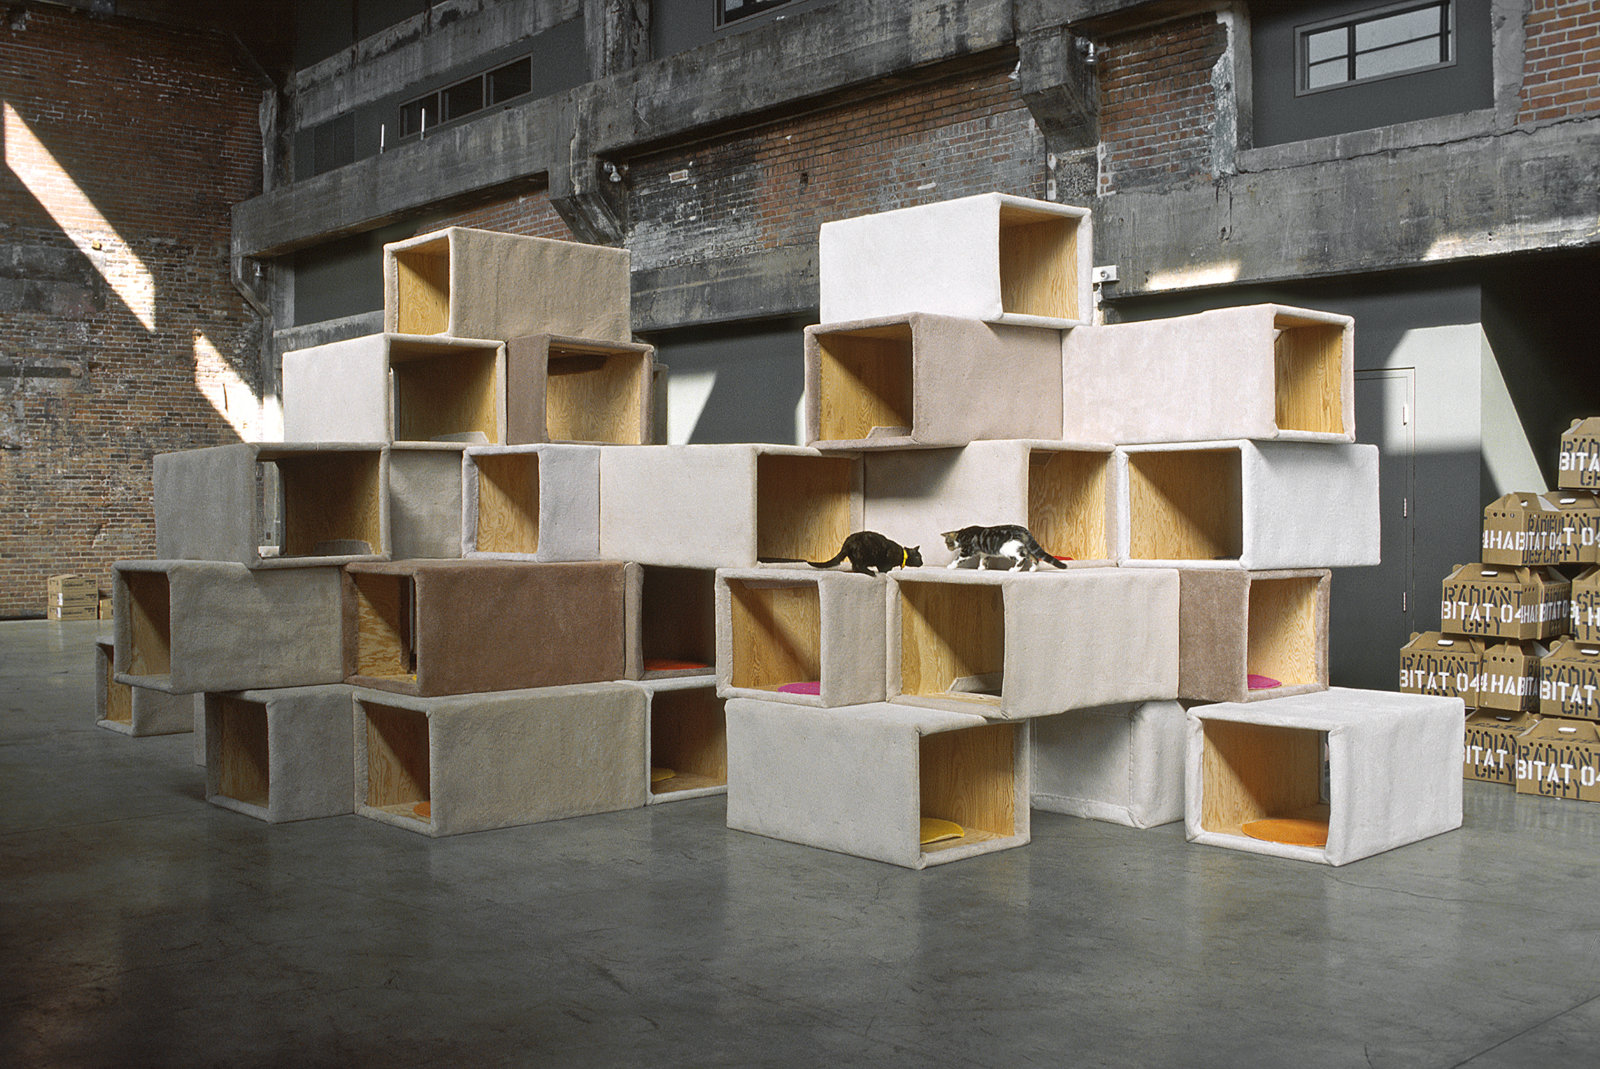 Brian Jungen, Habitat 04 - Cité radieuse des chats/Cats Radiant City, 2004, plywood, carpet, cats, 132 x 180 x 336 in. (335 x 457 x 853 cm)